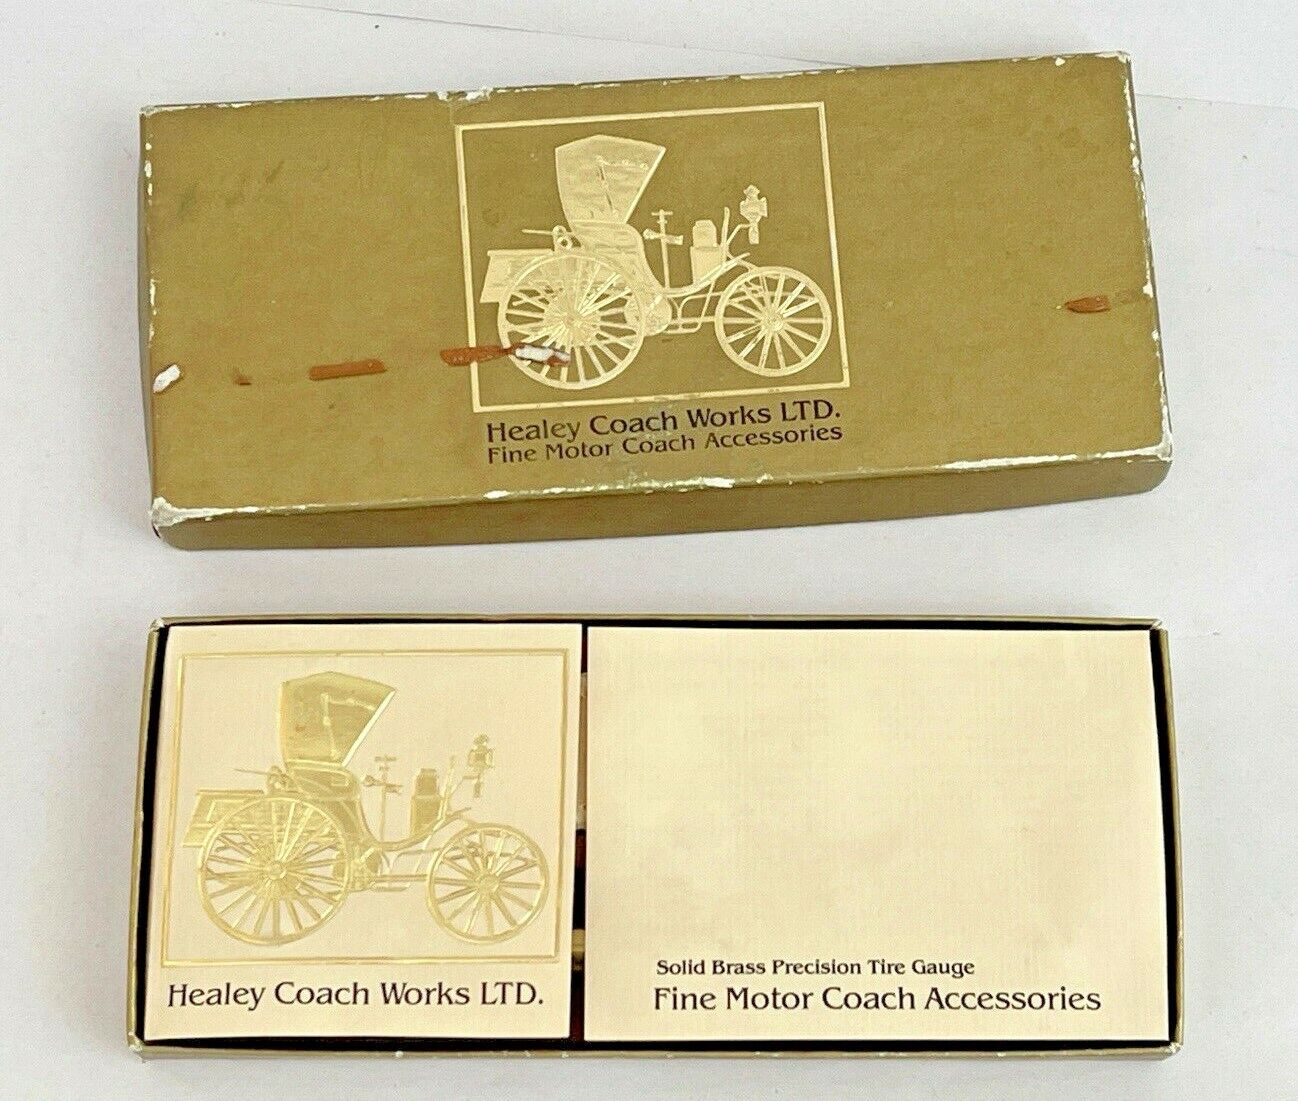 Healy Coach Works LTD Brass Precision Tire Gauge in Original Box